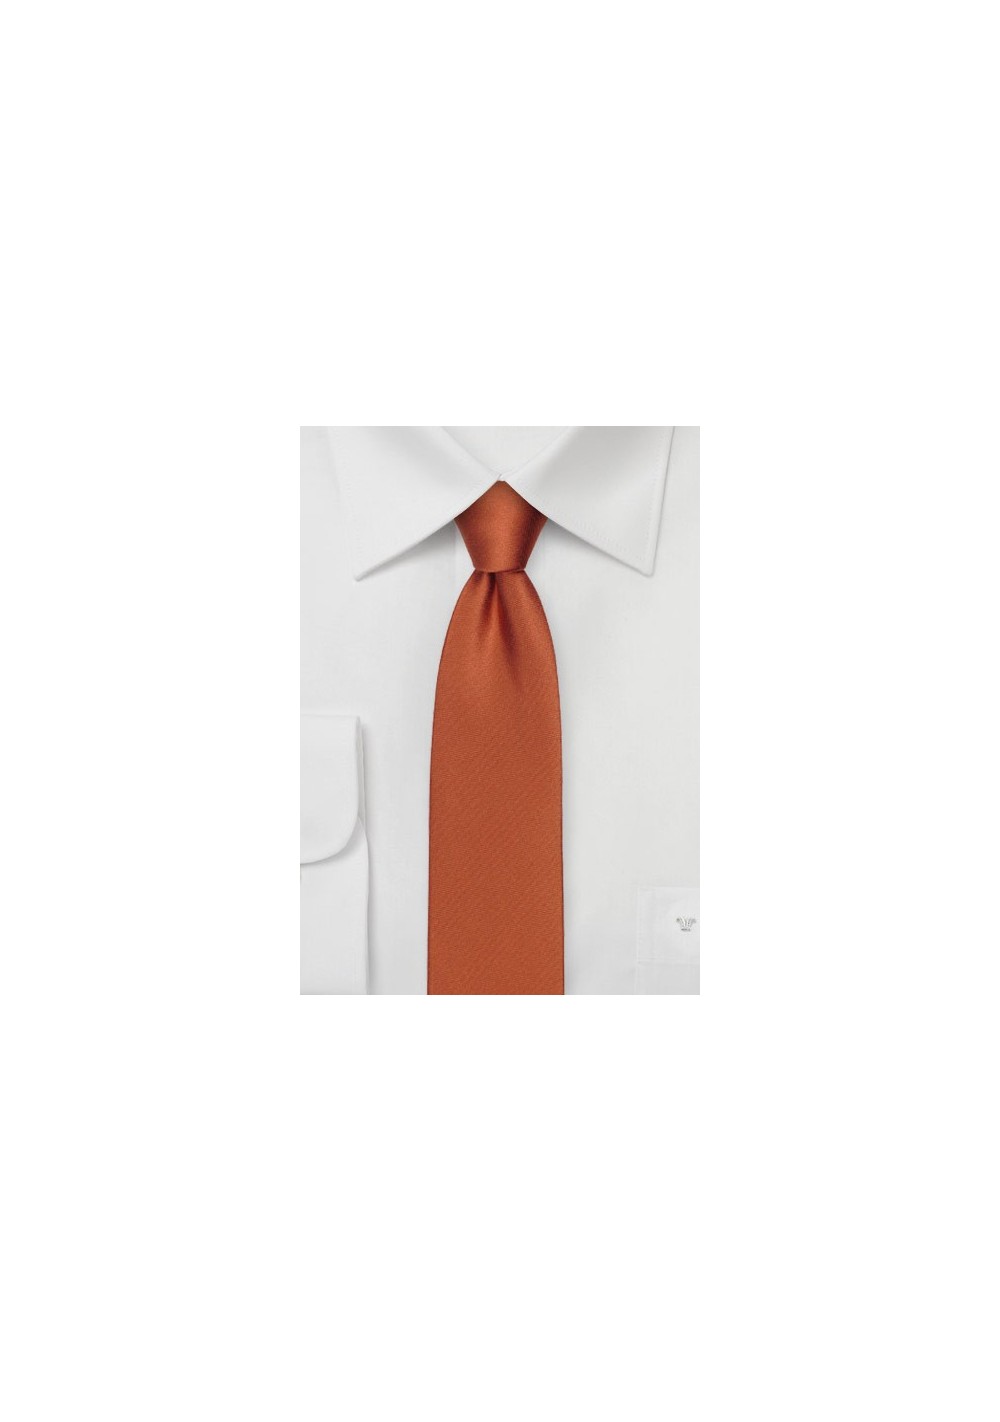 Copper Orange Skinny Silk Tie